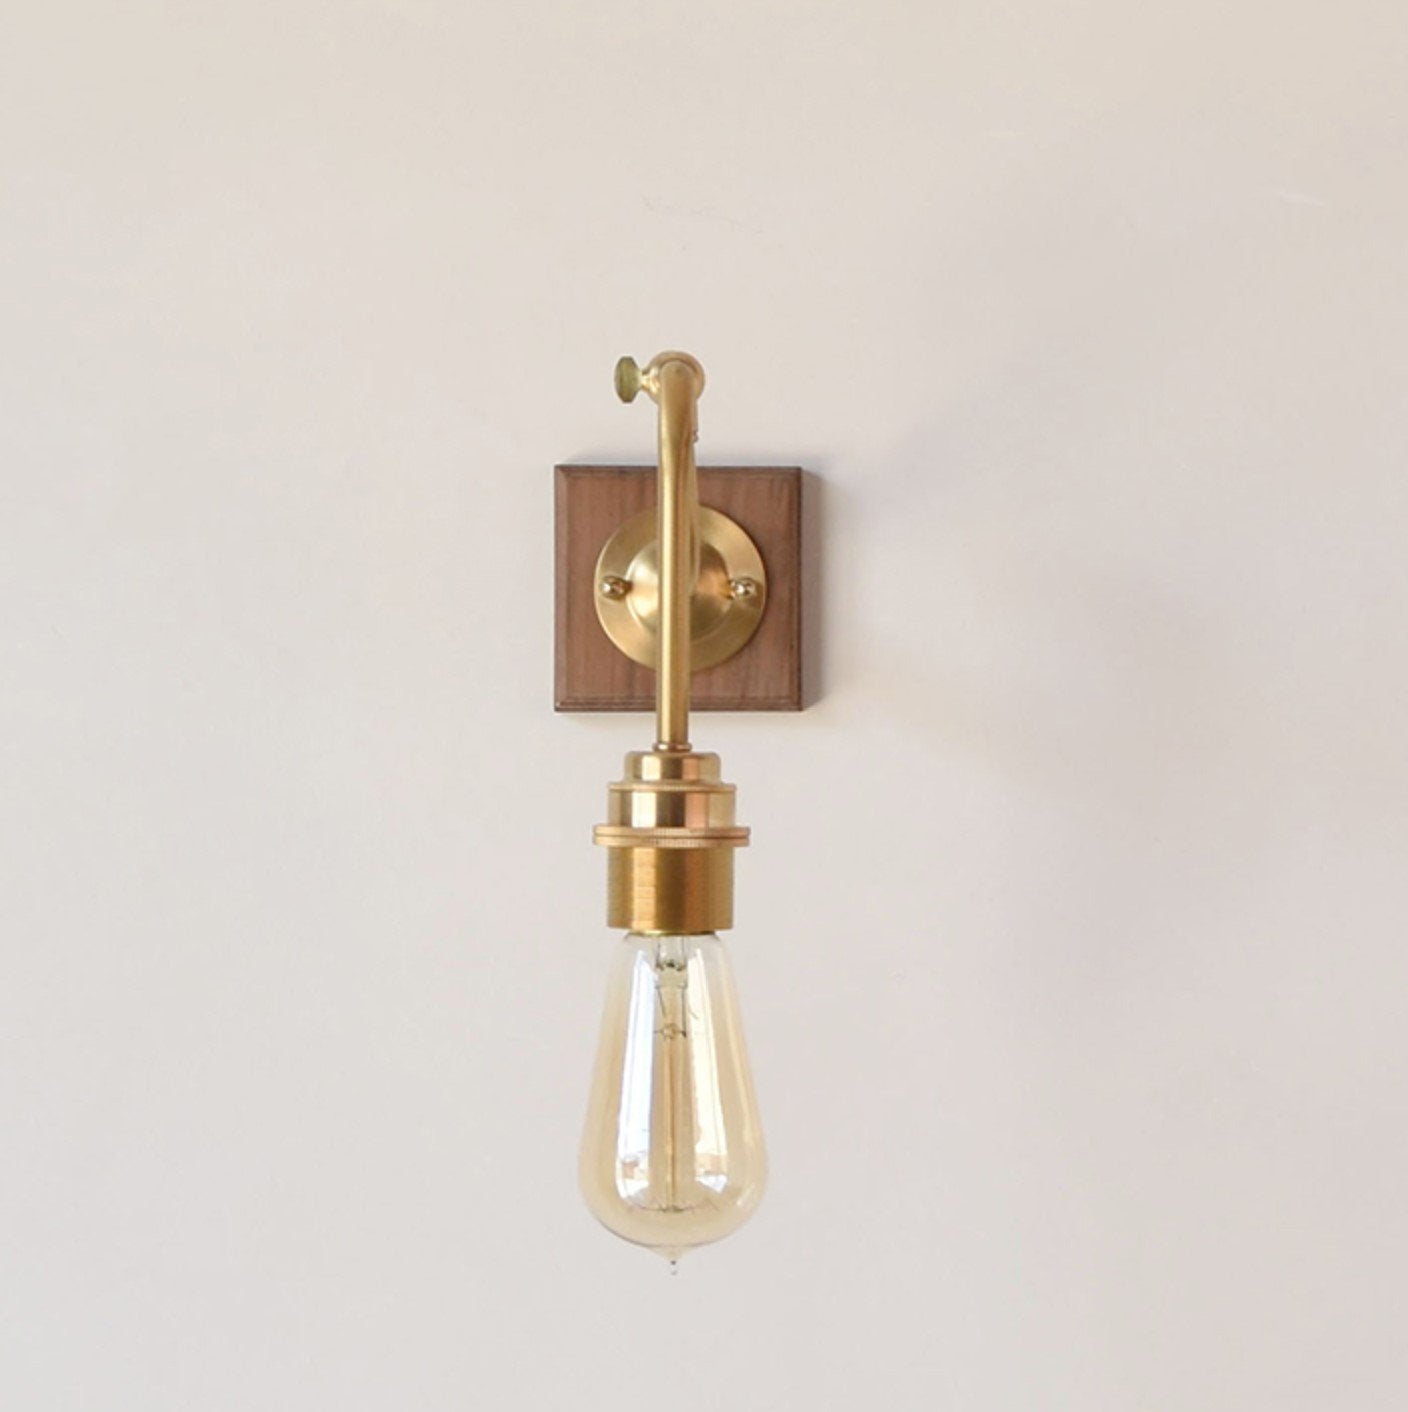 Ogilvy Wood Brass Wall Light